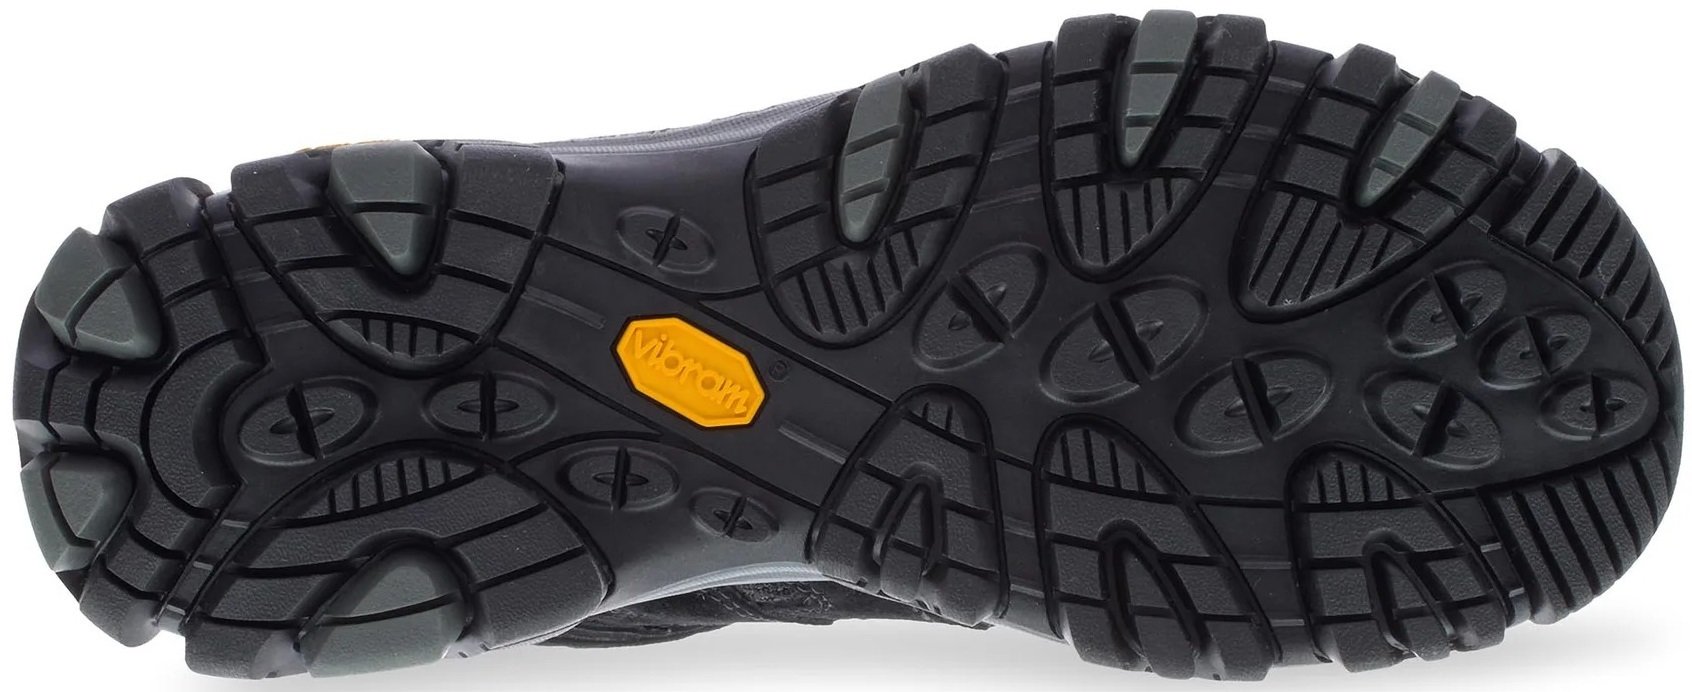 Ботинки мужские Merrell Moab 3 MID GTX black/grey 42 черный фото 4